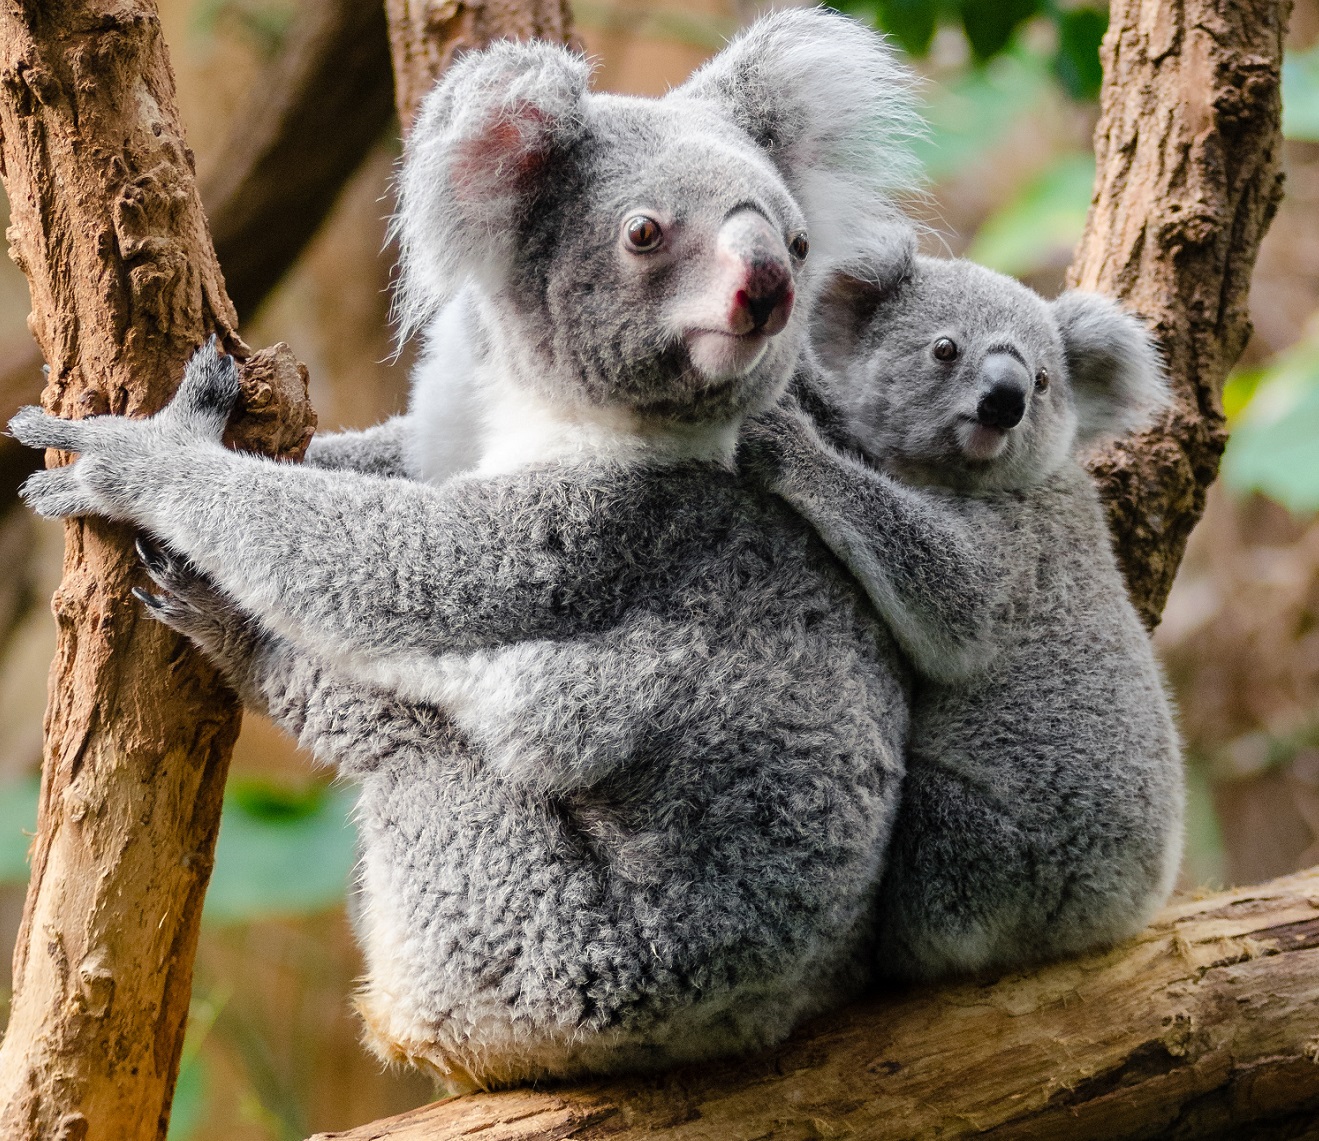 koalas in tree